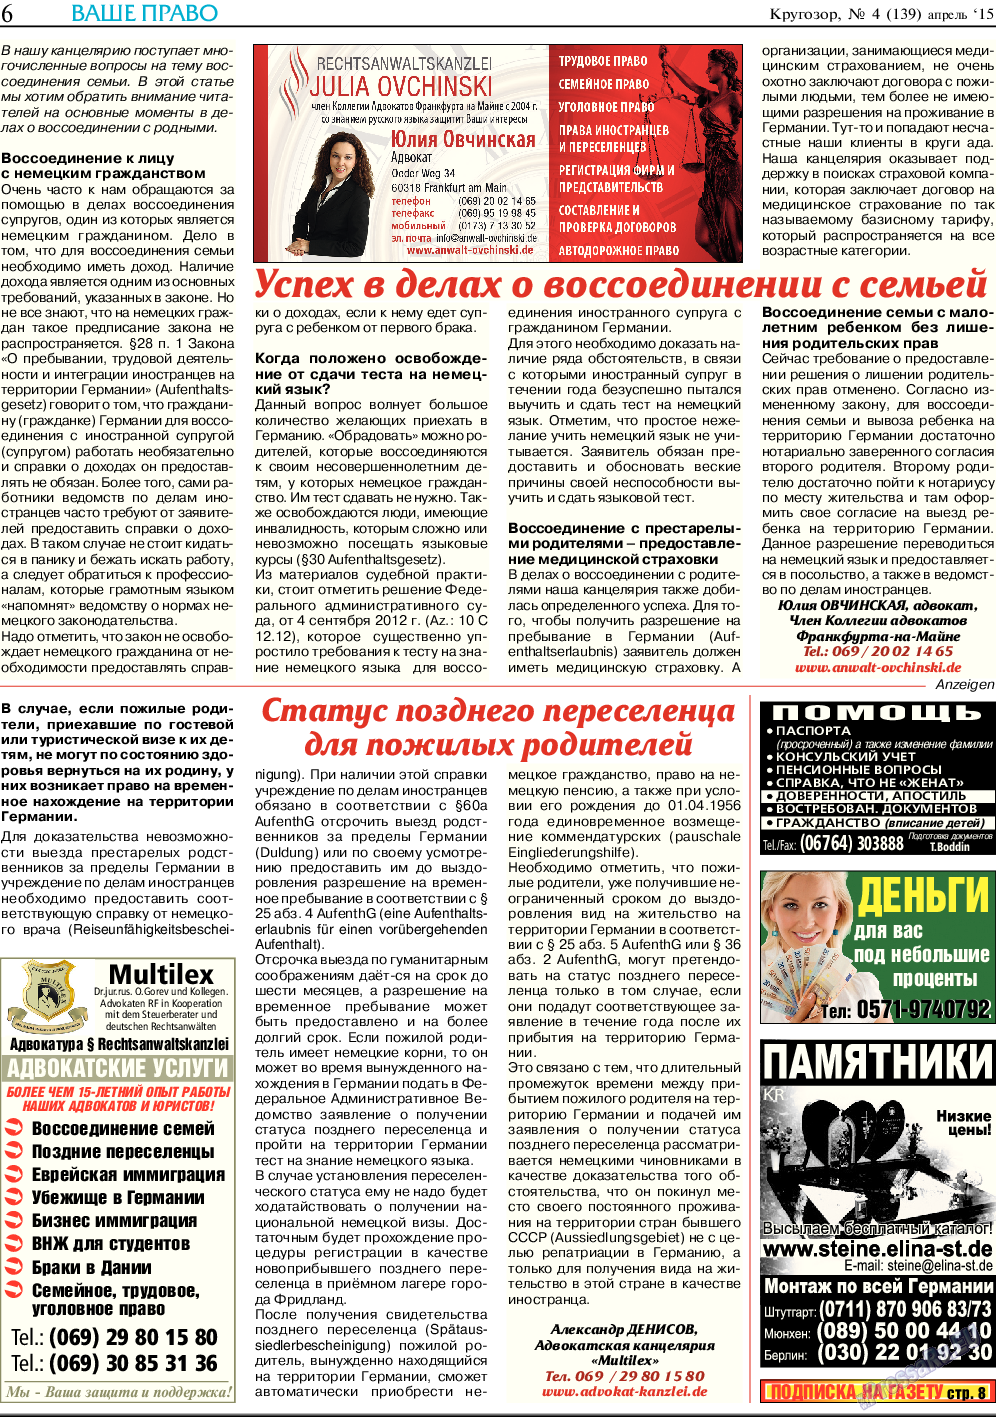 Кругозор (газета). 2015 год, номер 4, стр. 6